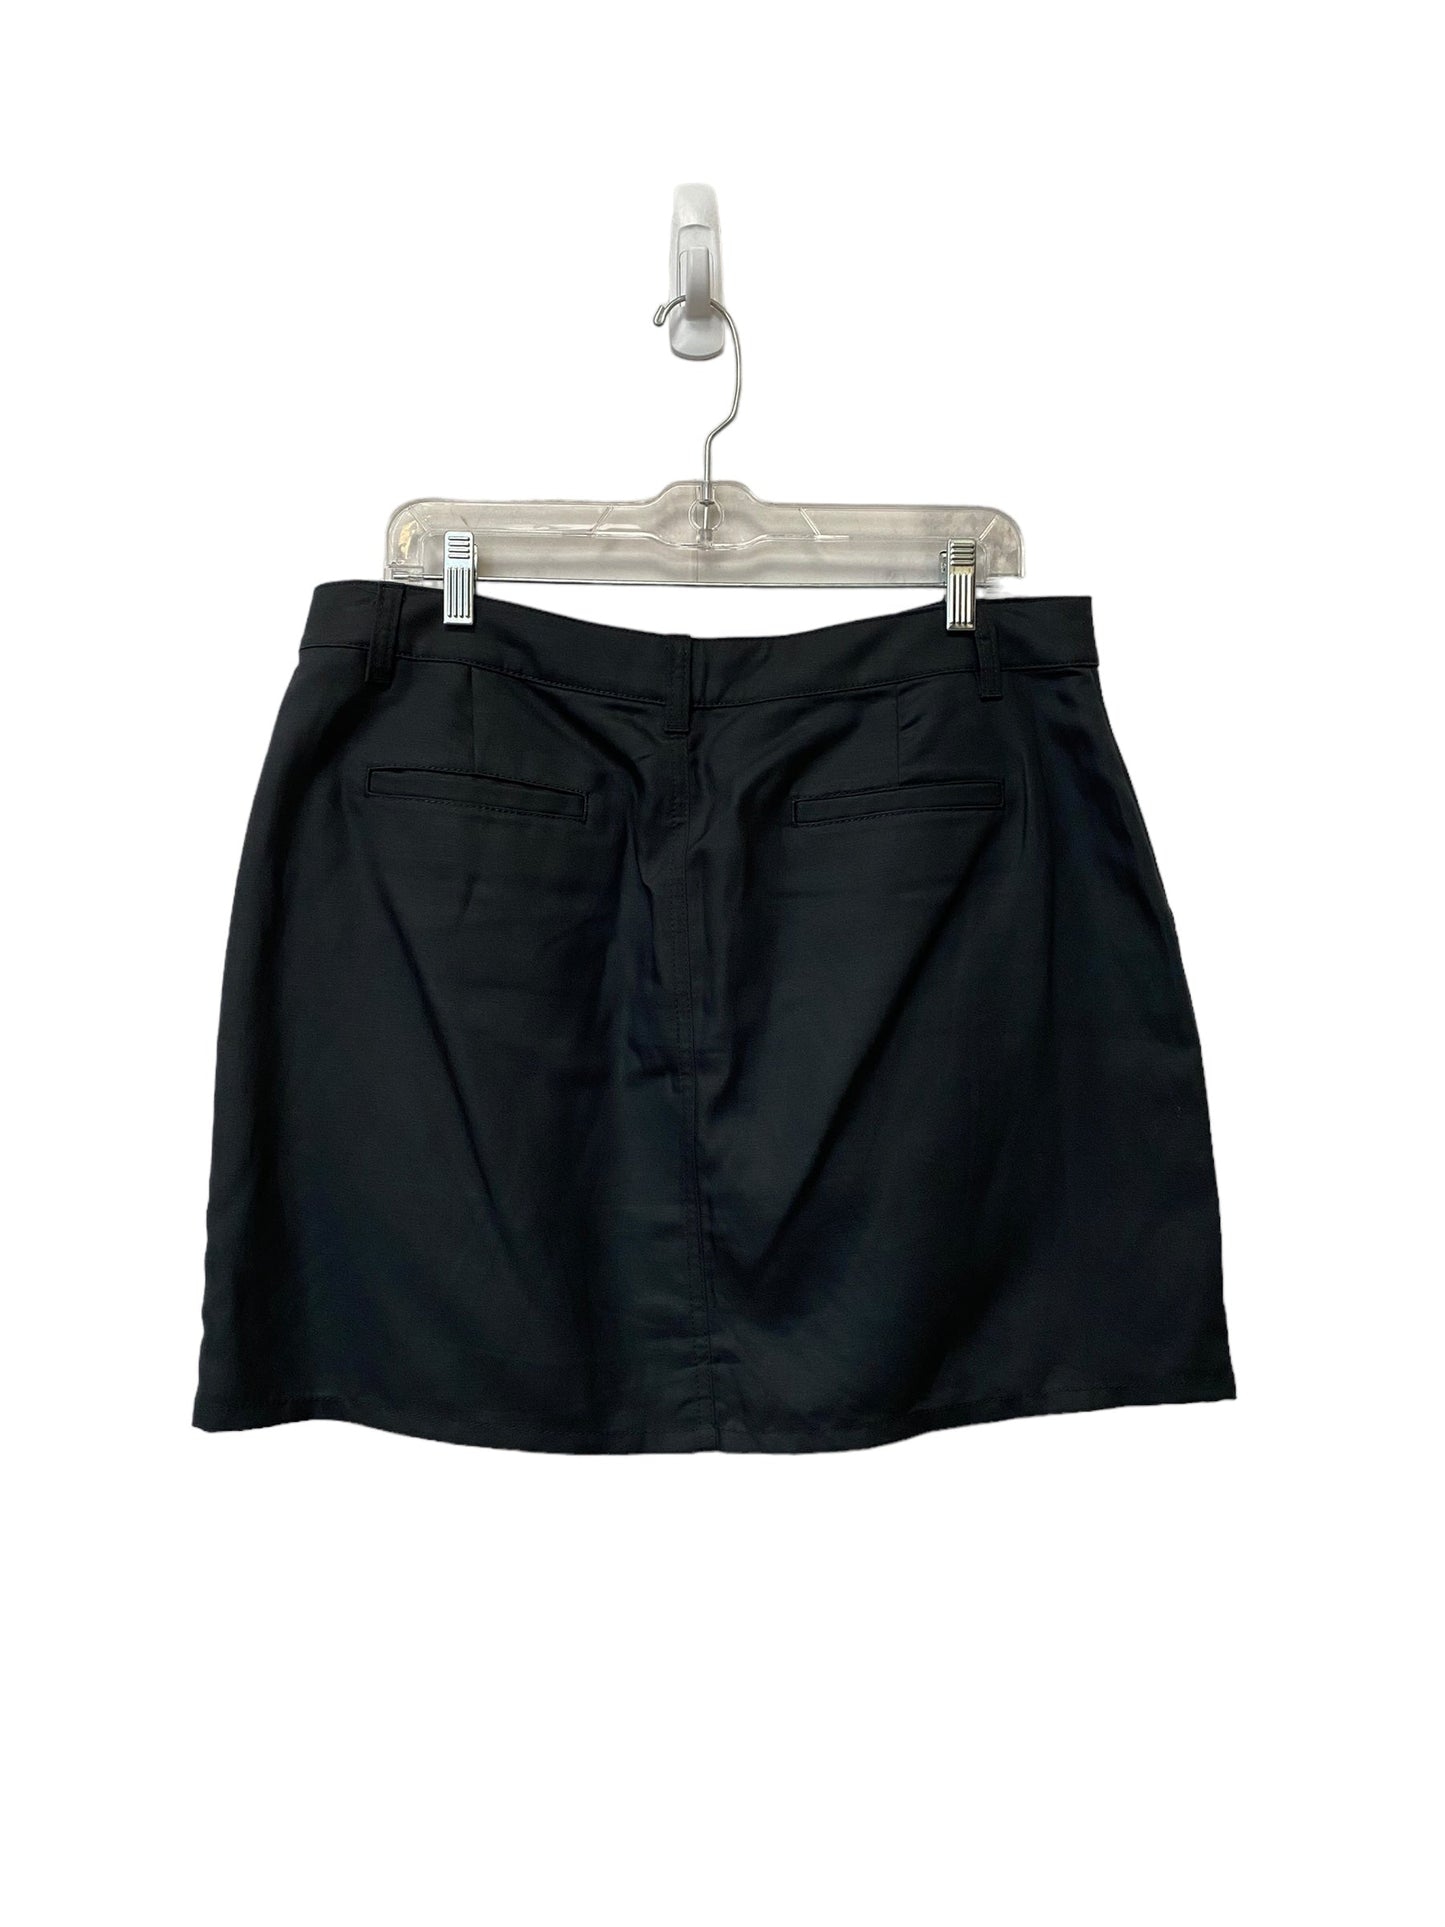 Black Skirt Mini & Short Loft, Size 12petite